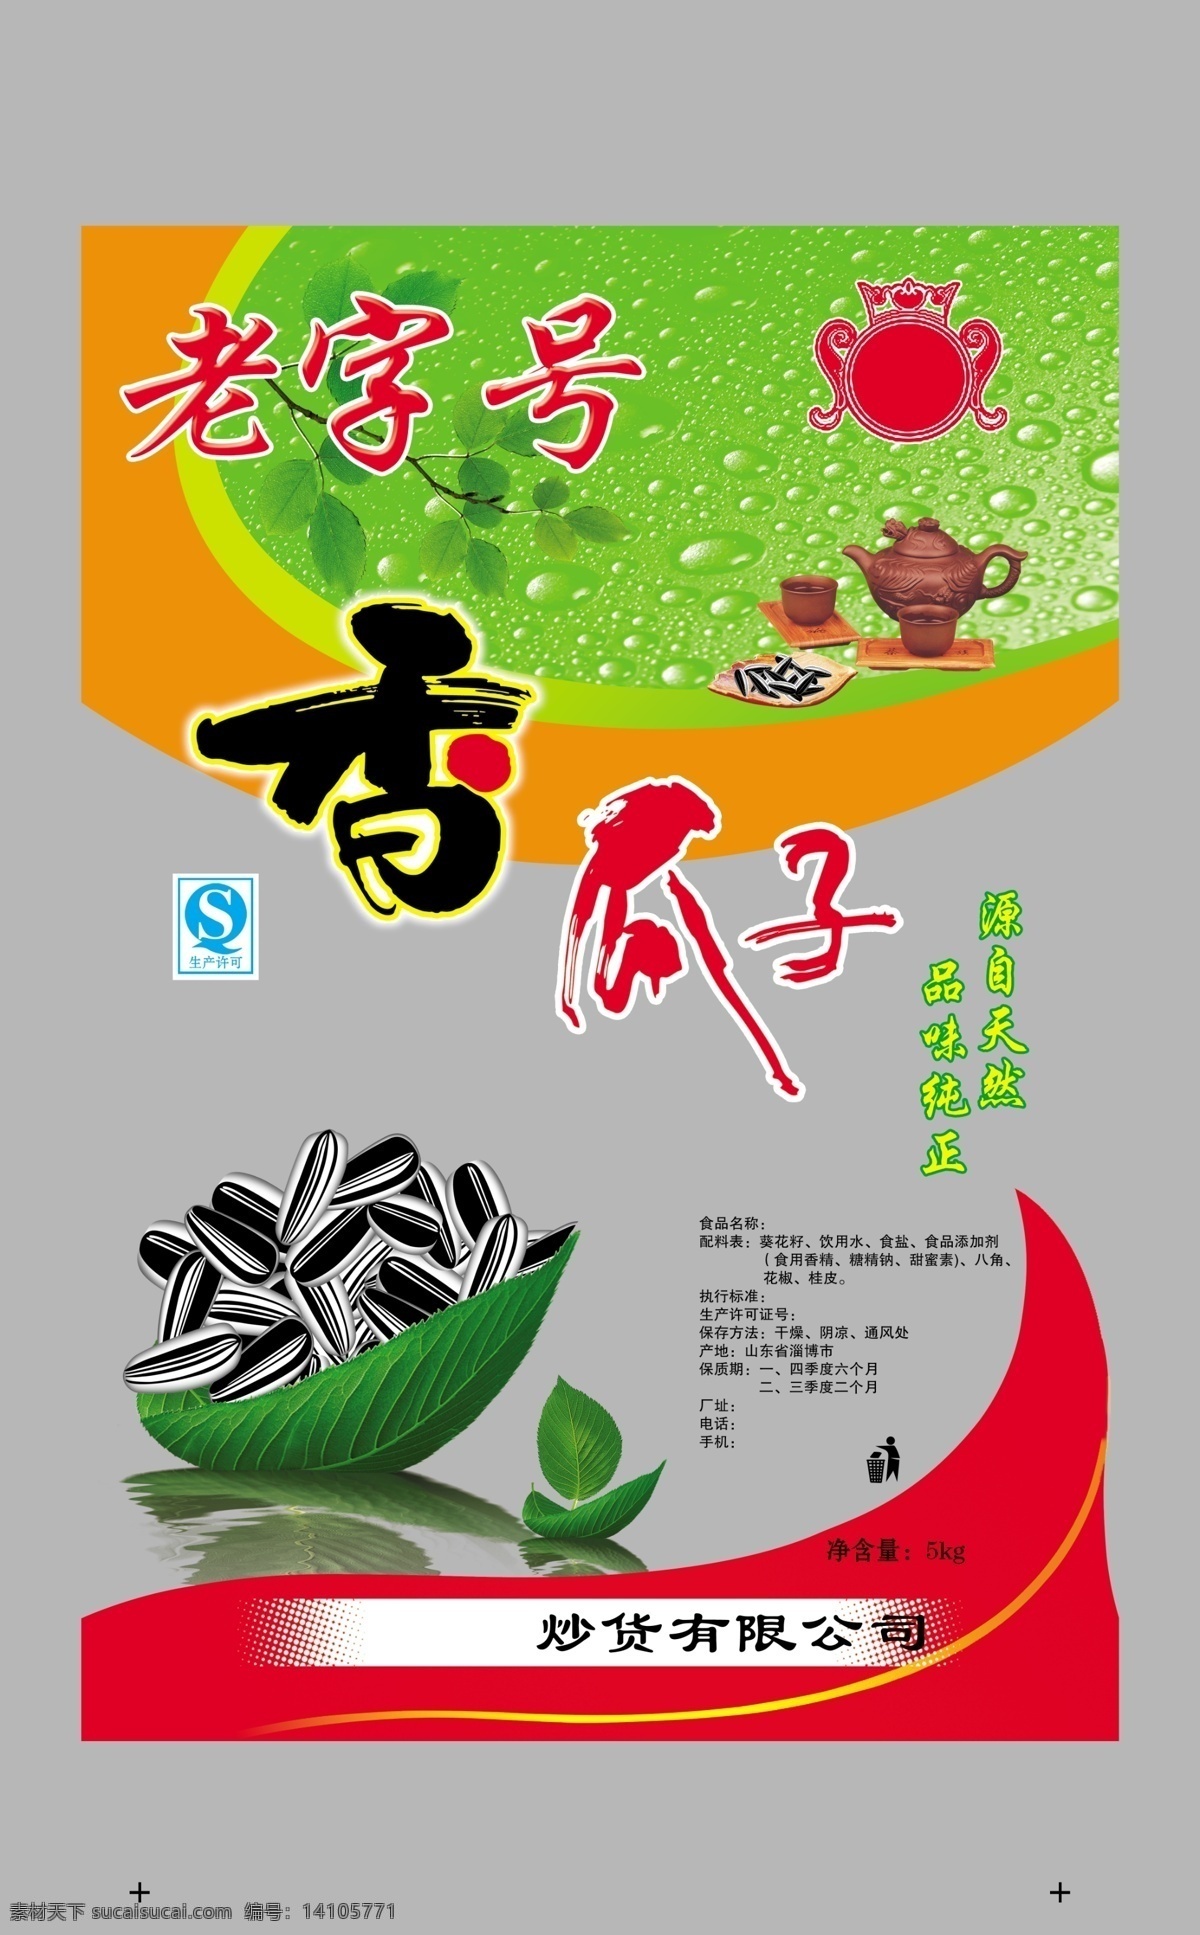 qs 包装设计 茶壶 瓜子 广告设计模板 商标 树叶 水滴 香 模板下载 香瓜子 源文件 psd源文件